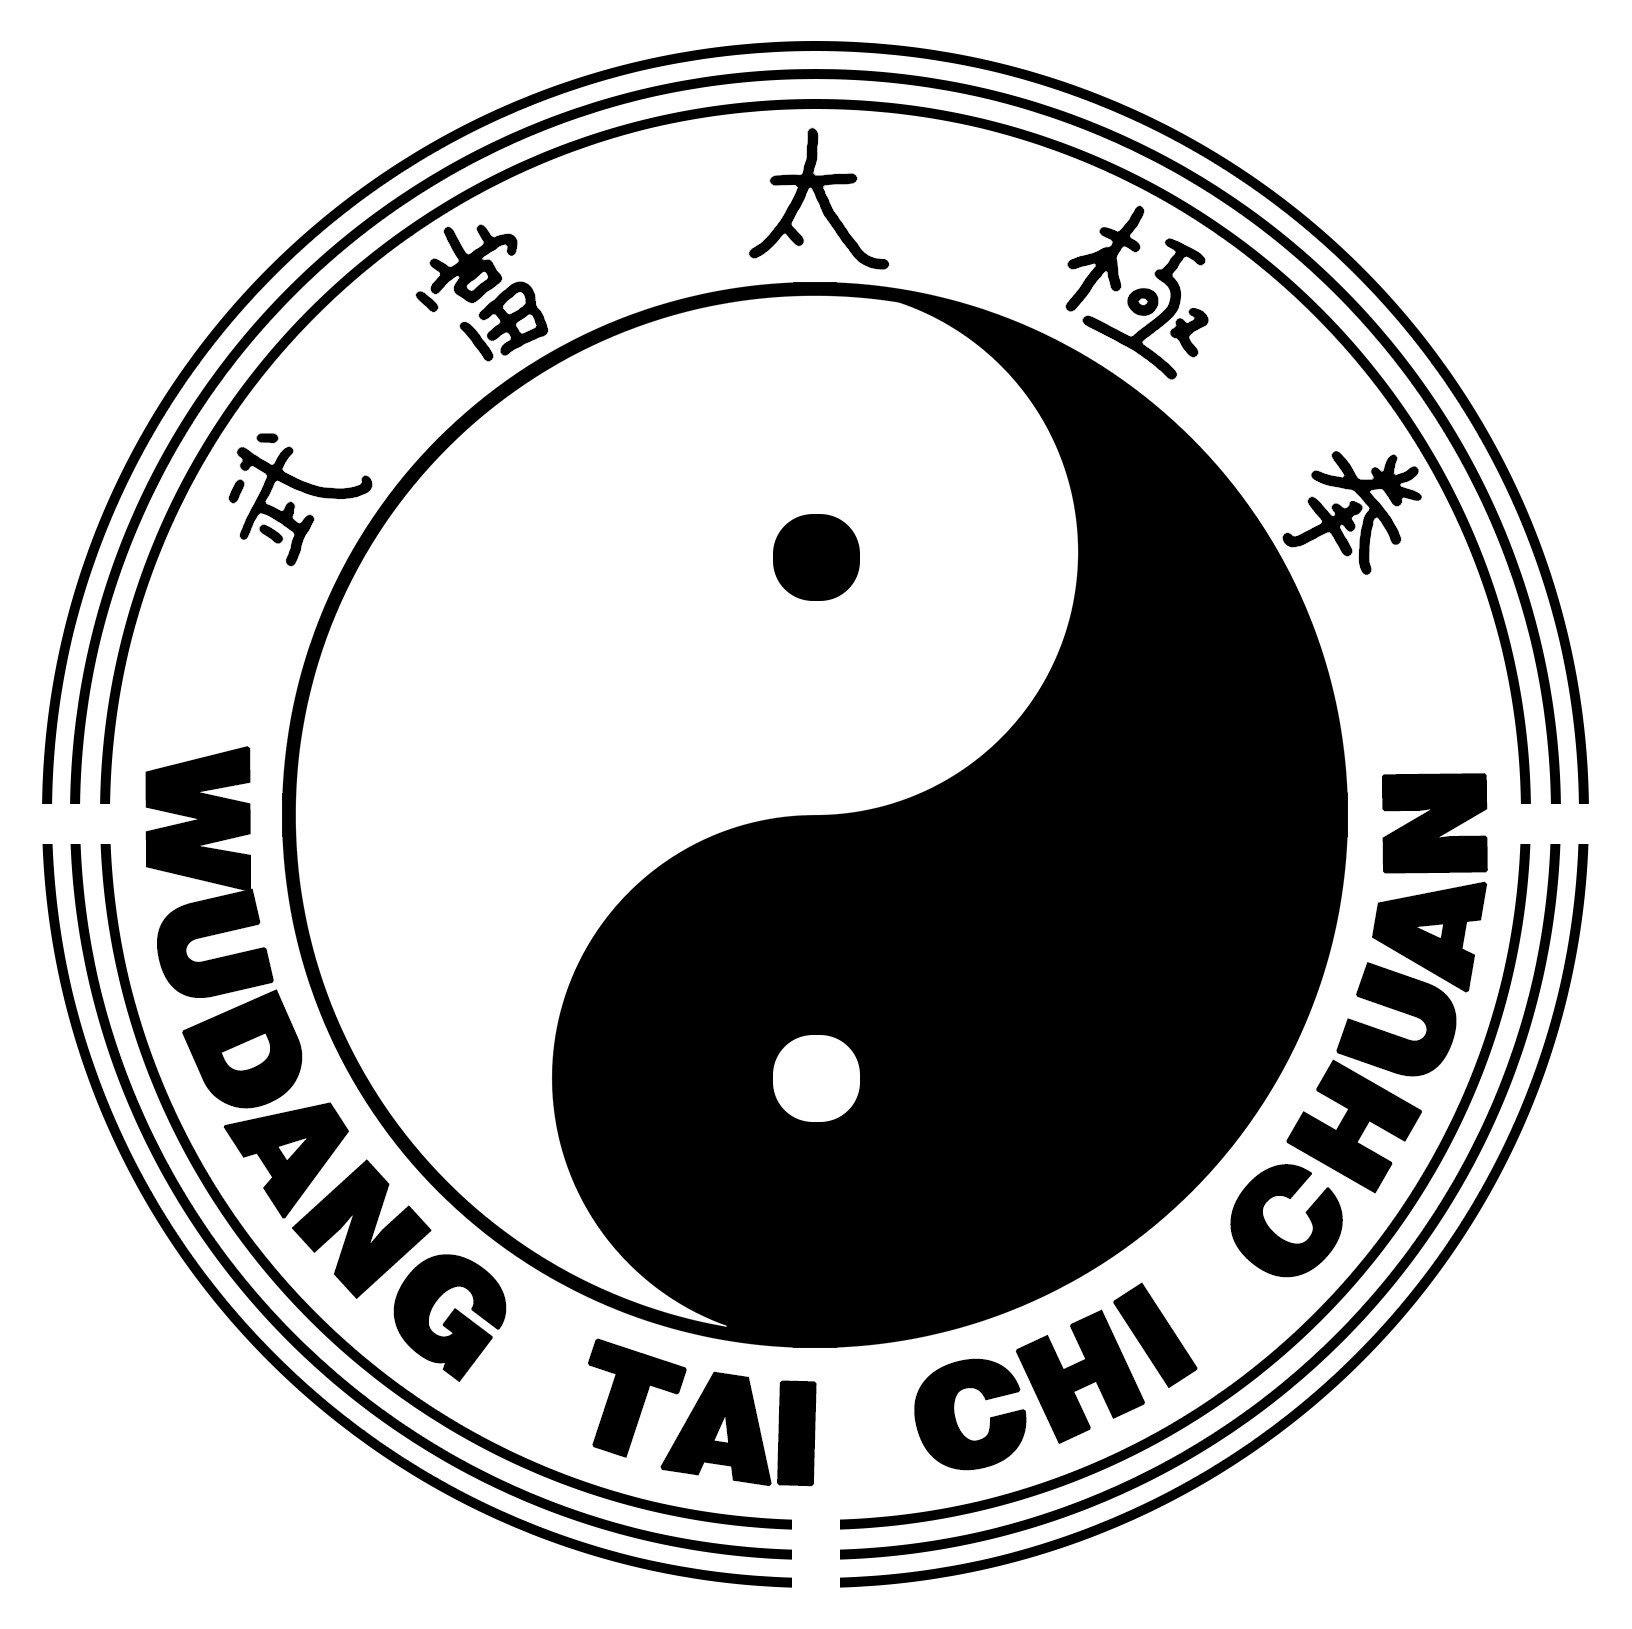 PTCC Slagelse er passioneret omkring Tai Chi Chuan som en praktisk kampkunst og Qigong som et helsesystem  for både krop og sind.